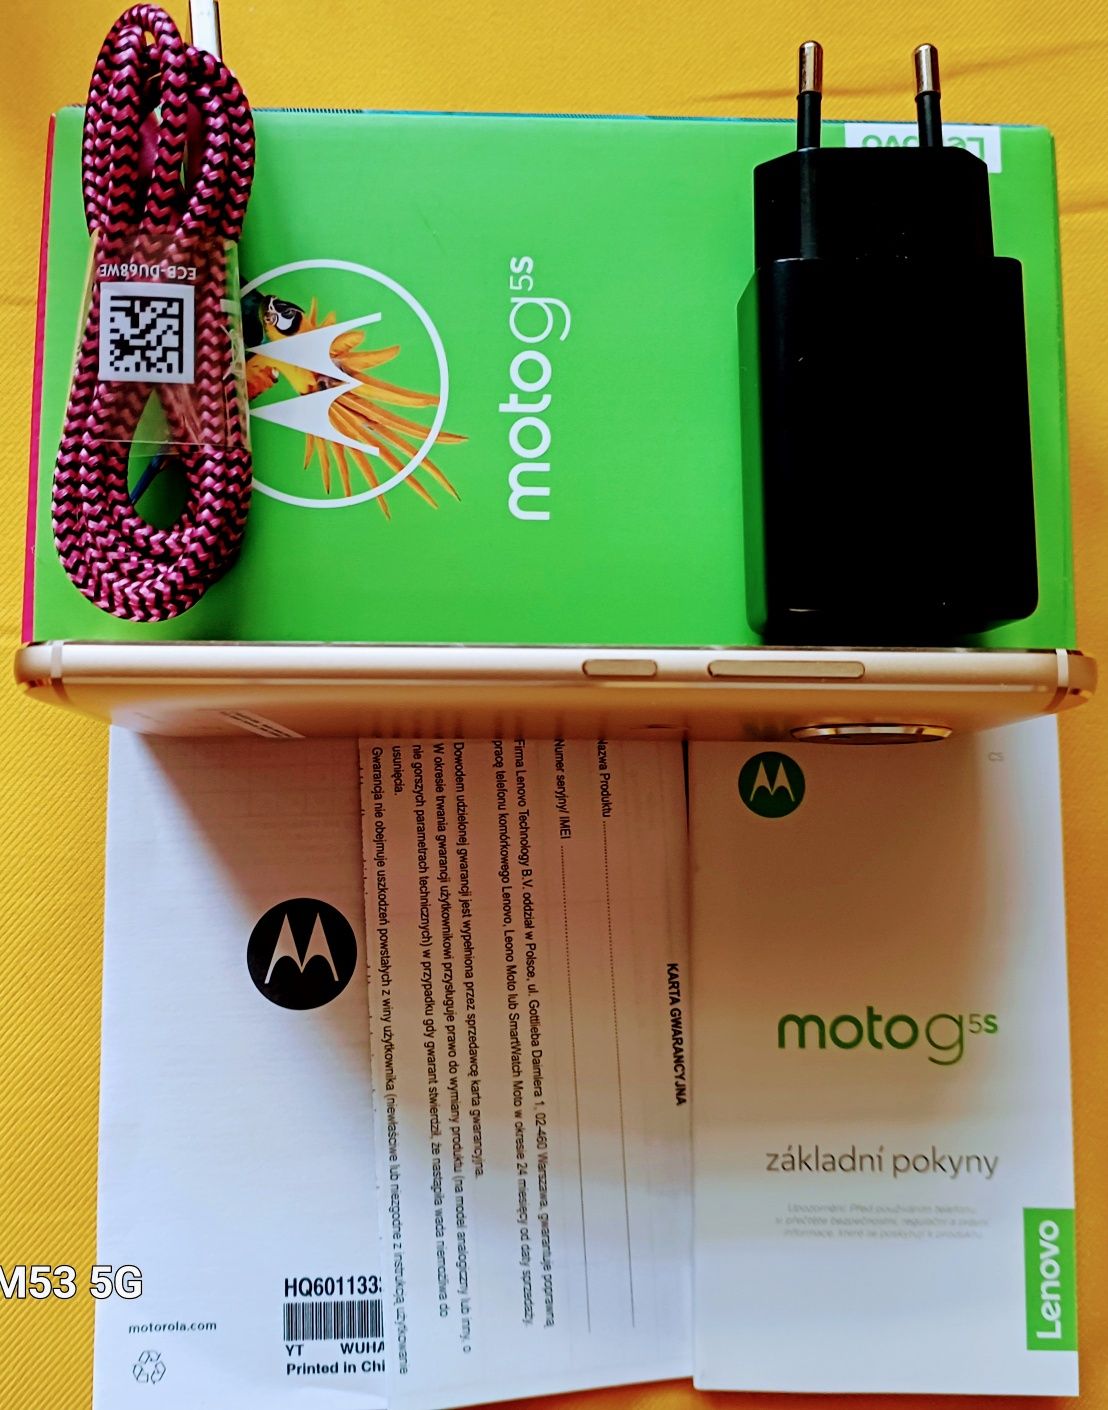 Smartfon "Motorola"G5s.